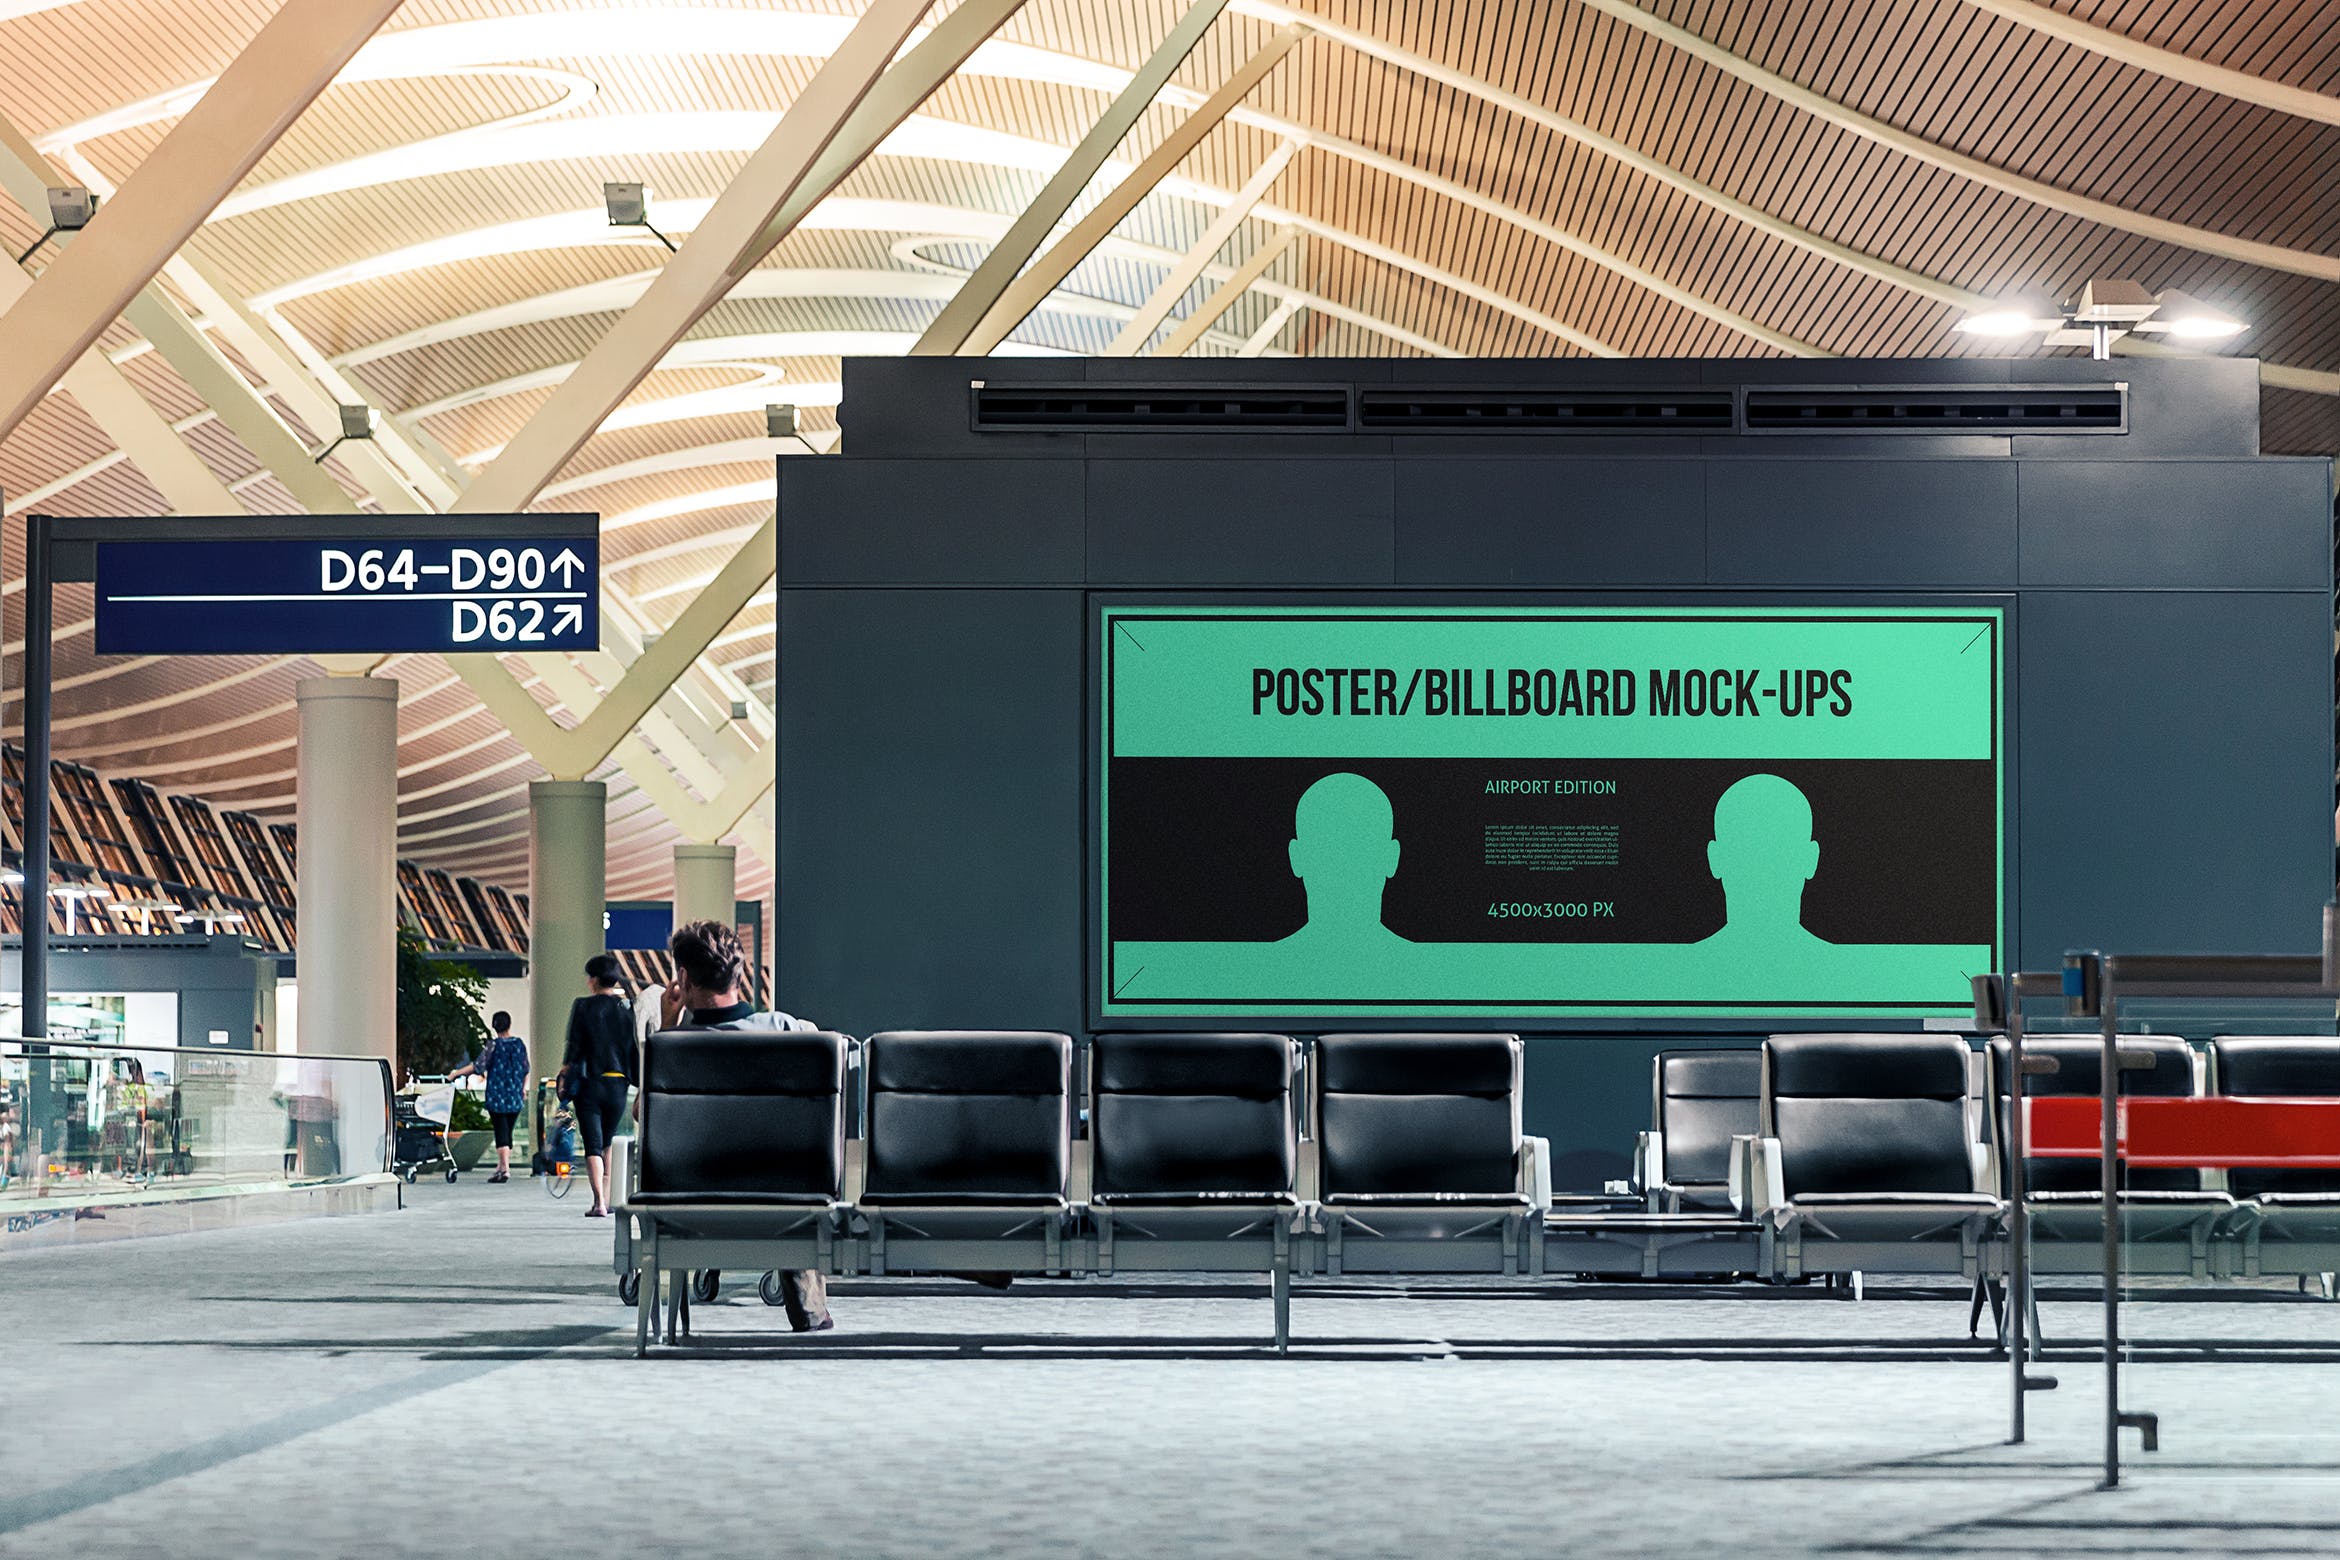 机场候机室海报/广告牌样机蚂蚁素材精选模板#4 Poster / Billboard Mock-ups – Airport Edition #4插图